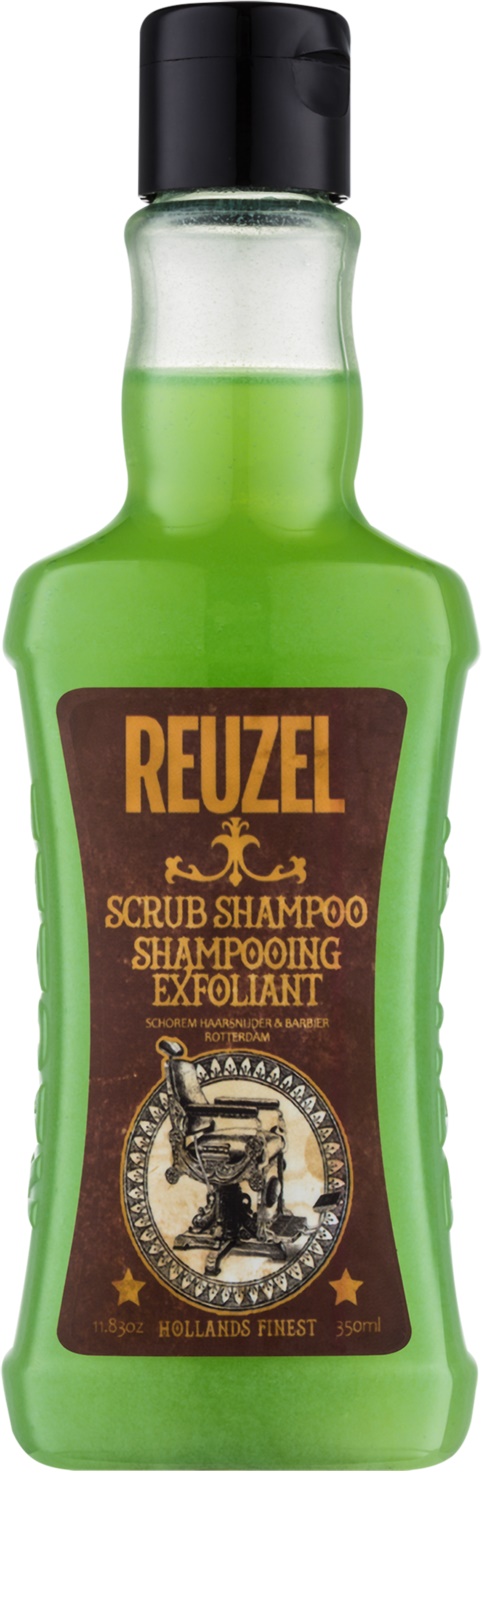 REUZEL Scrub Shampoo 350 ml